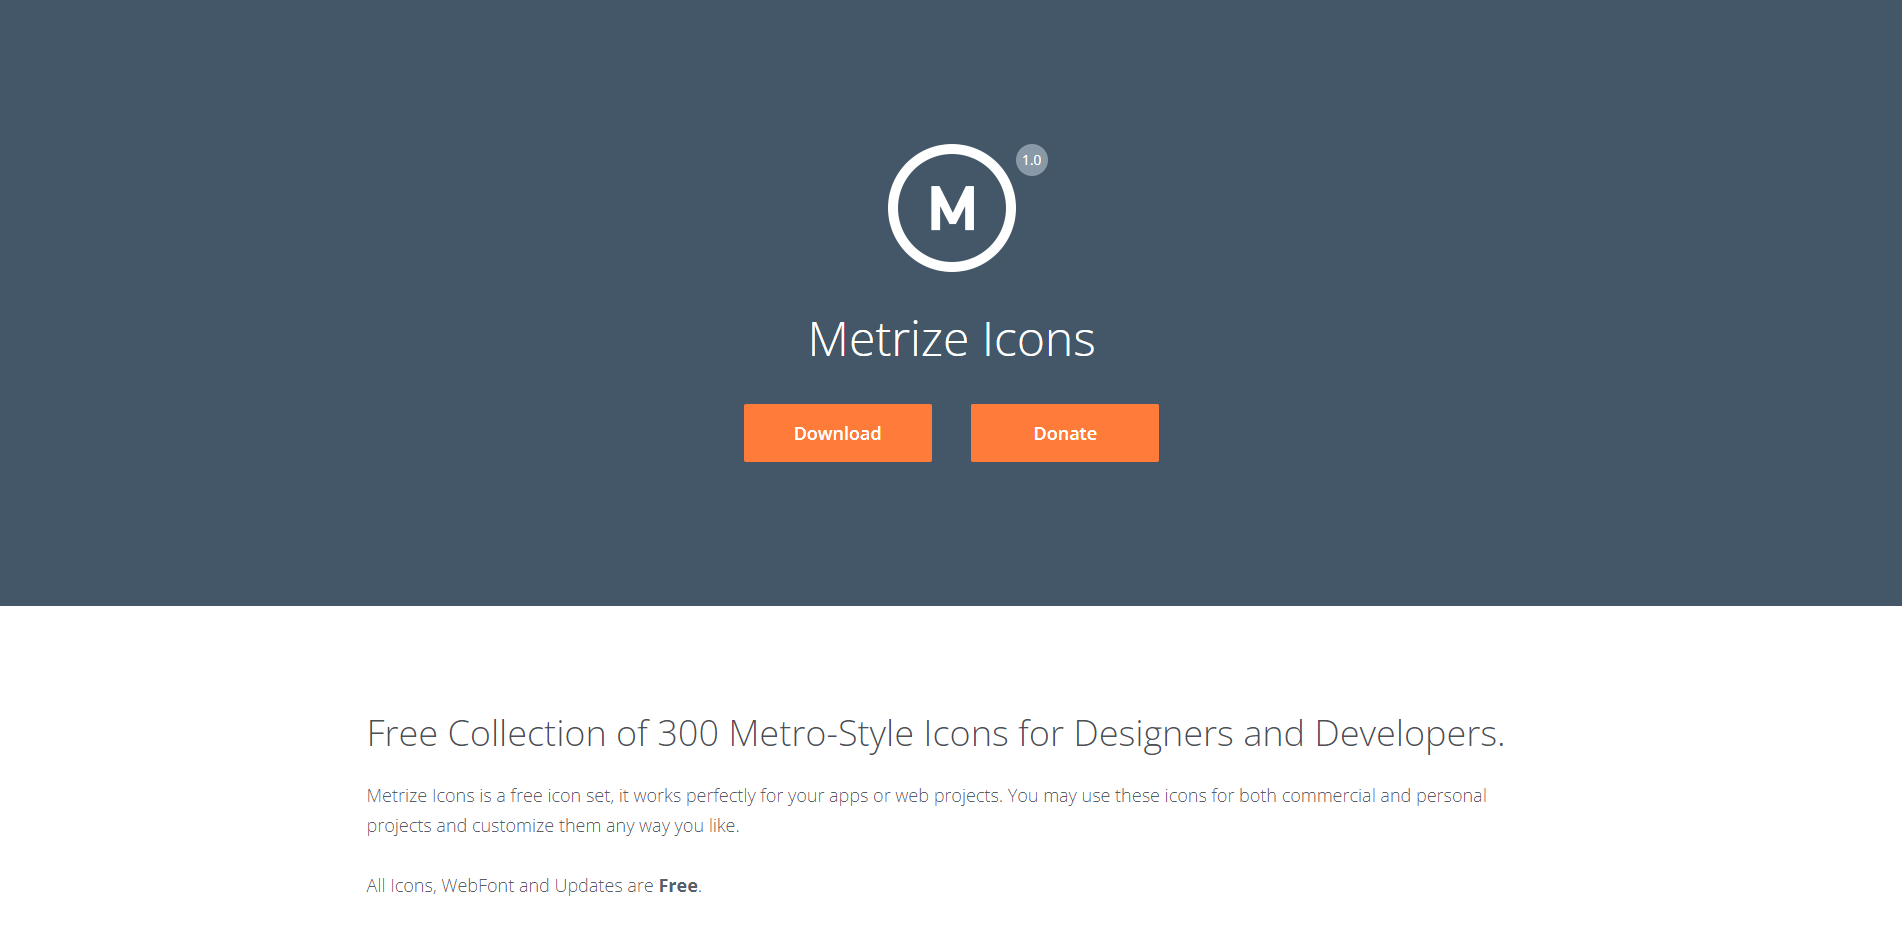 메트라이즈 아이콘 (Metrize Icons)